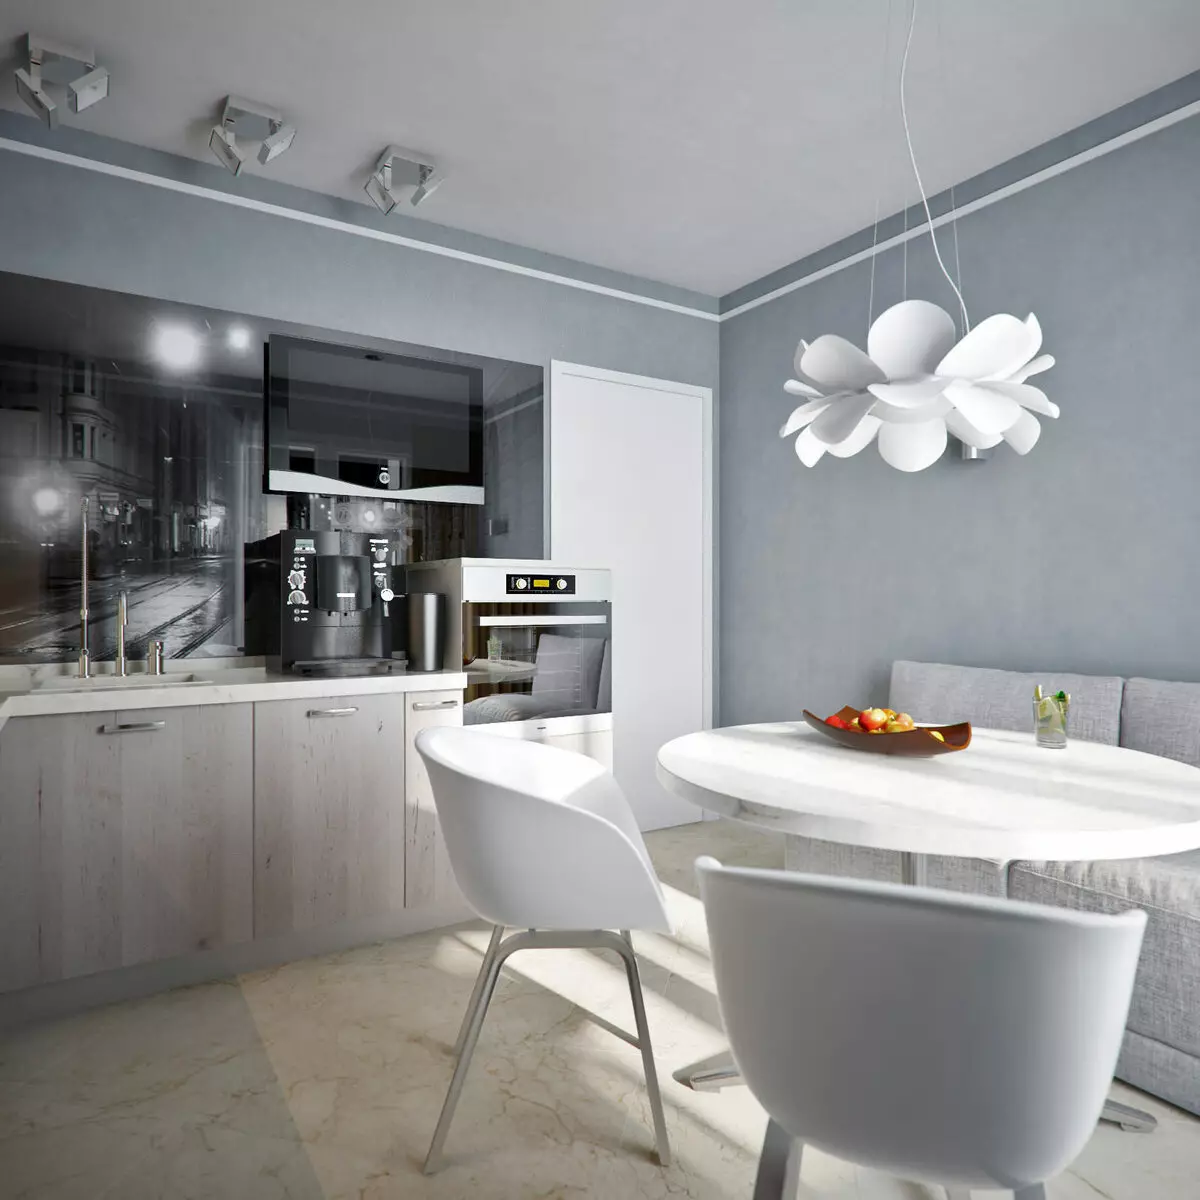 白灰厨房（81张照片）：内部的白色和灰色色调的厨房耳机。白色墙壁设计与灰色遮罩或光泽的耳机 9389_72